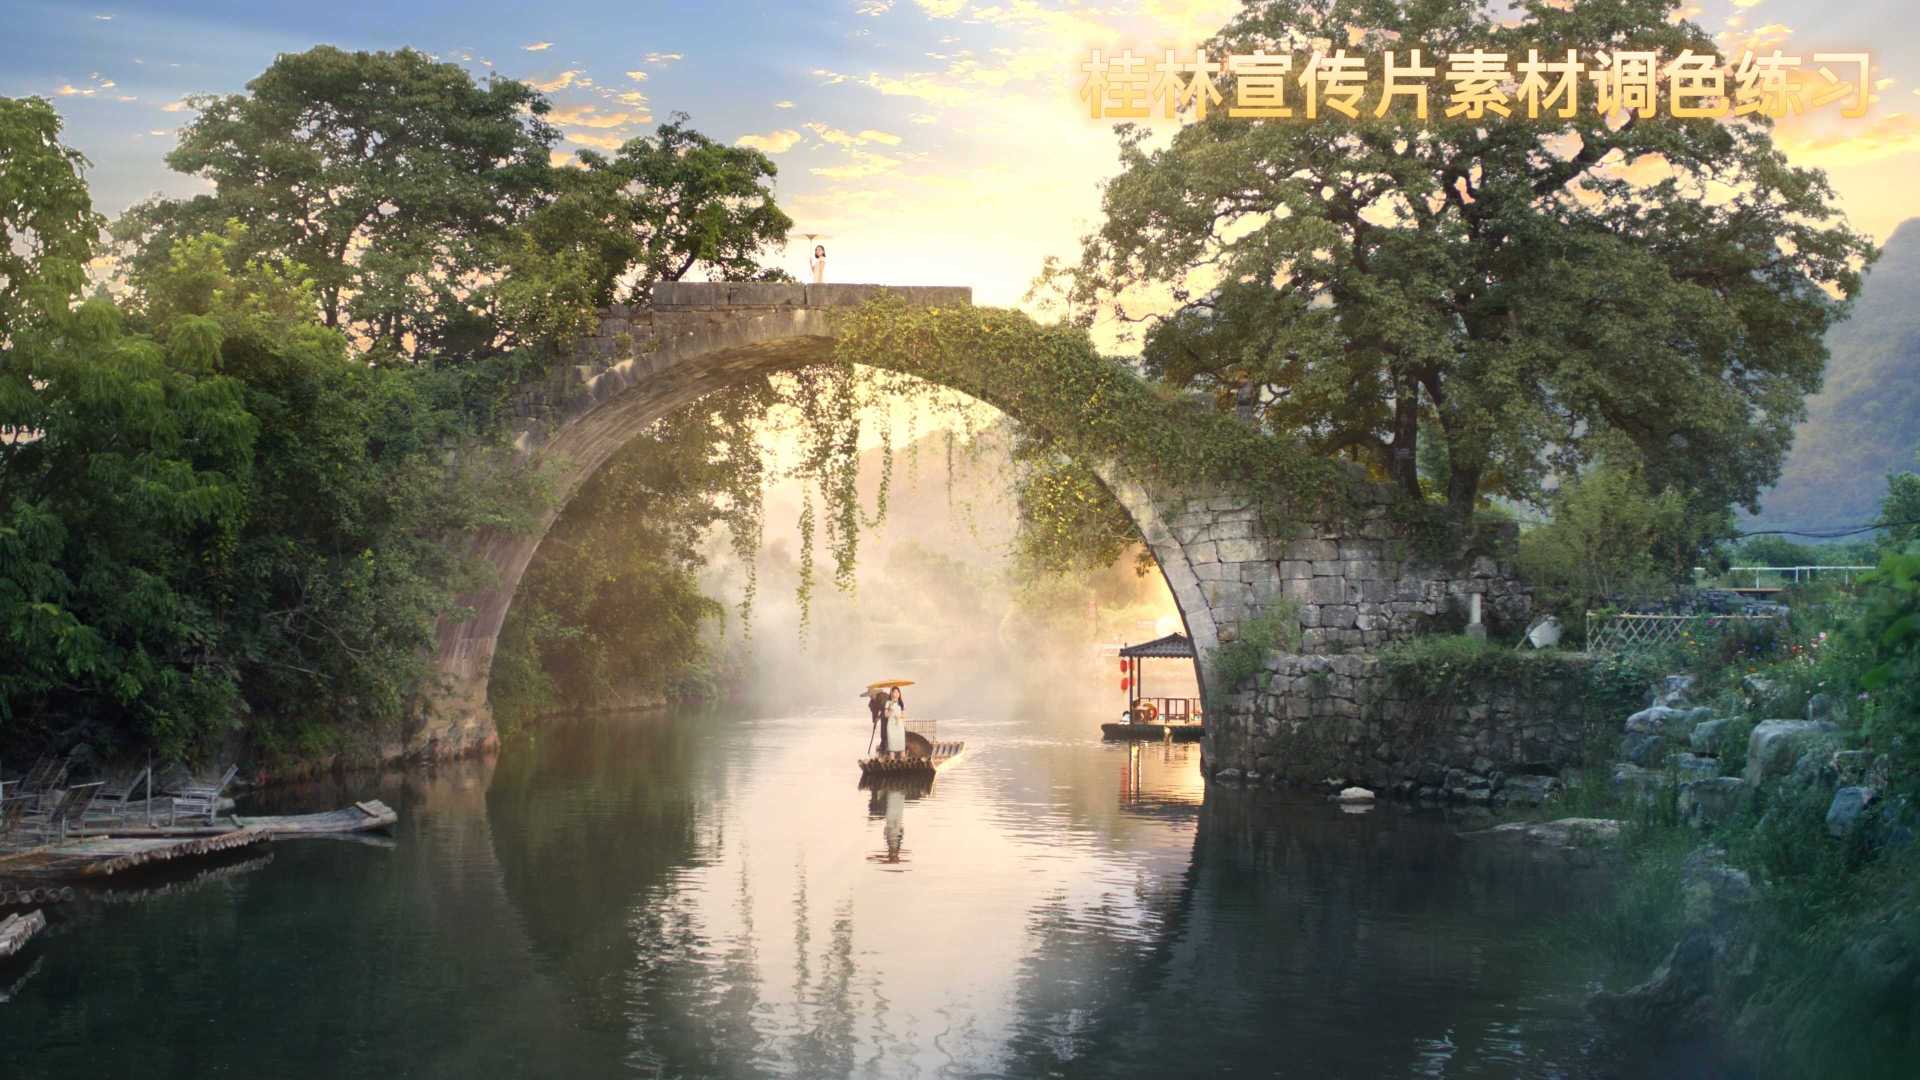 桂林宣传片-富里桥调色练习大景2